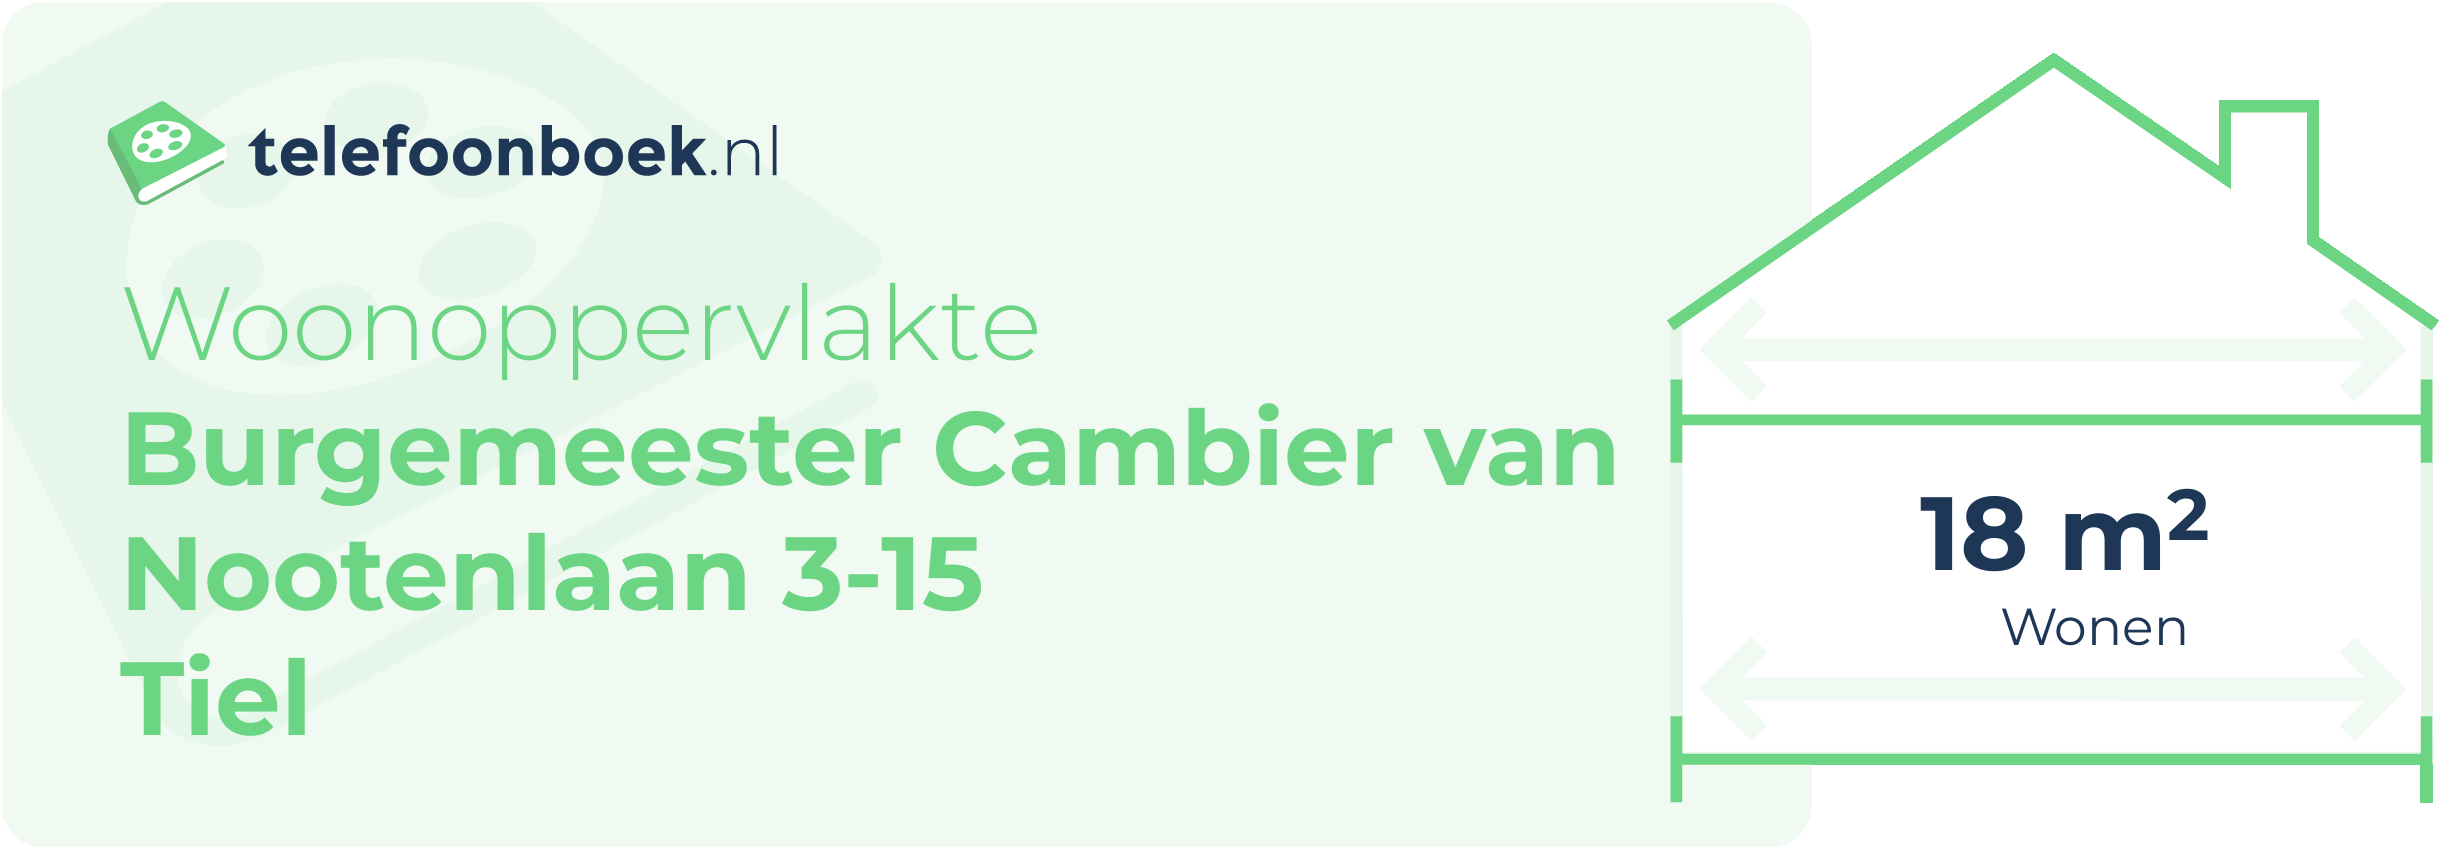 Woonoppervlakte Burgemeester Cambier Van Nootenlaan 3-15 Tiel